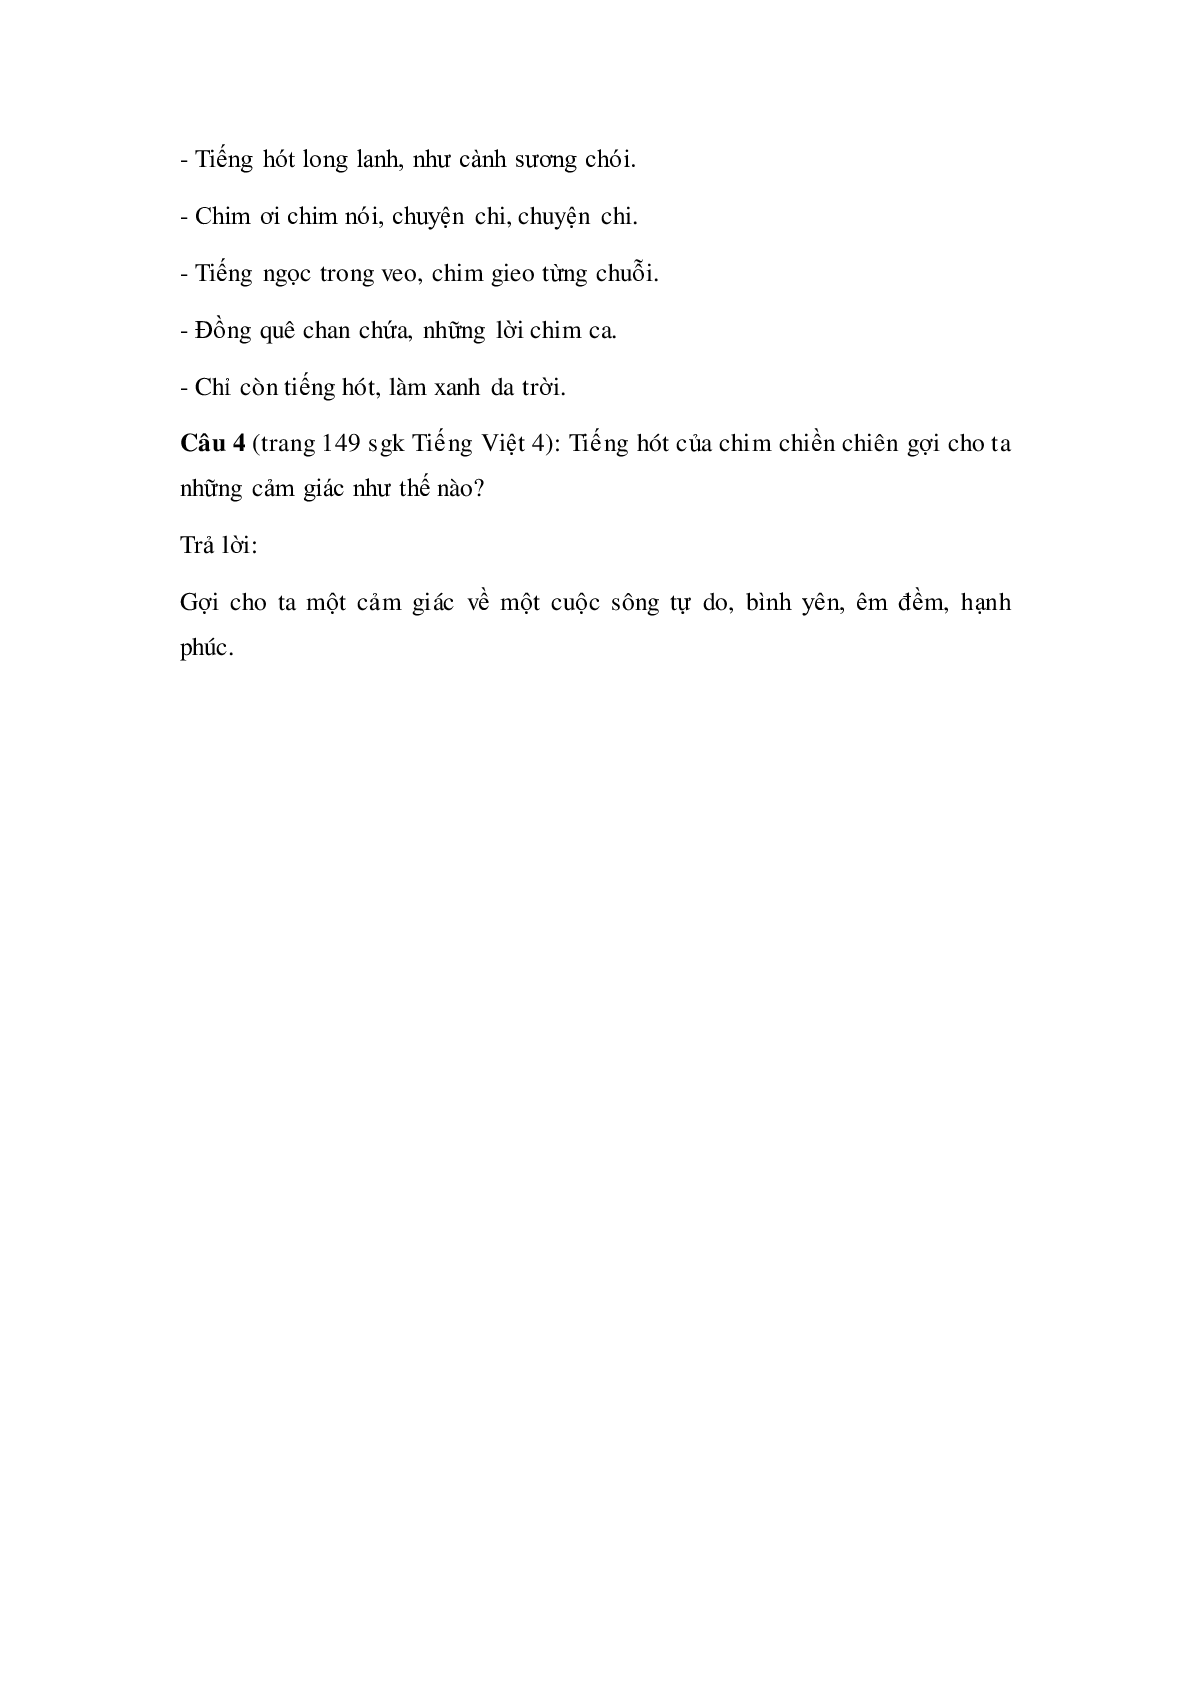 Soạn Tiếng Việt lớp 4: Tập đọc: Con chim chiền chiện mới nhất (trang 3)